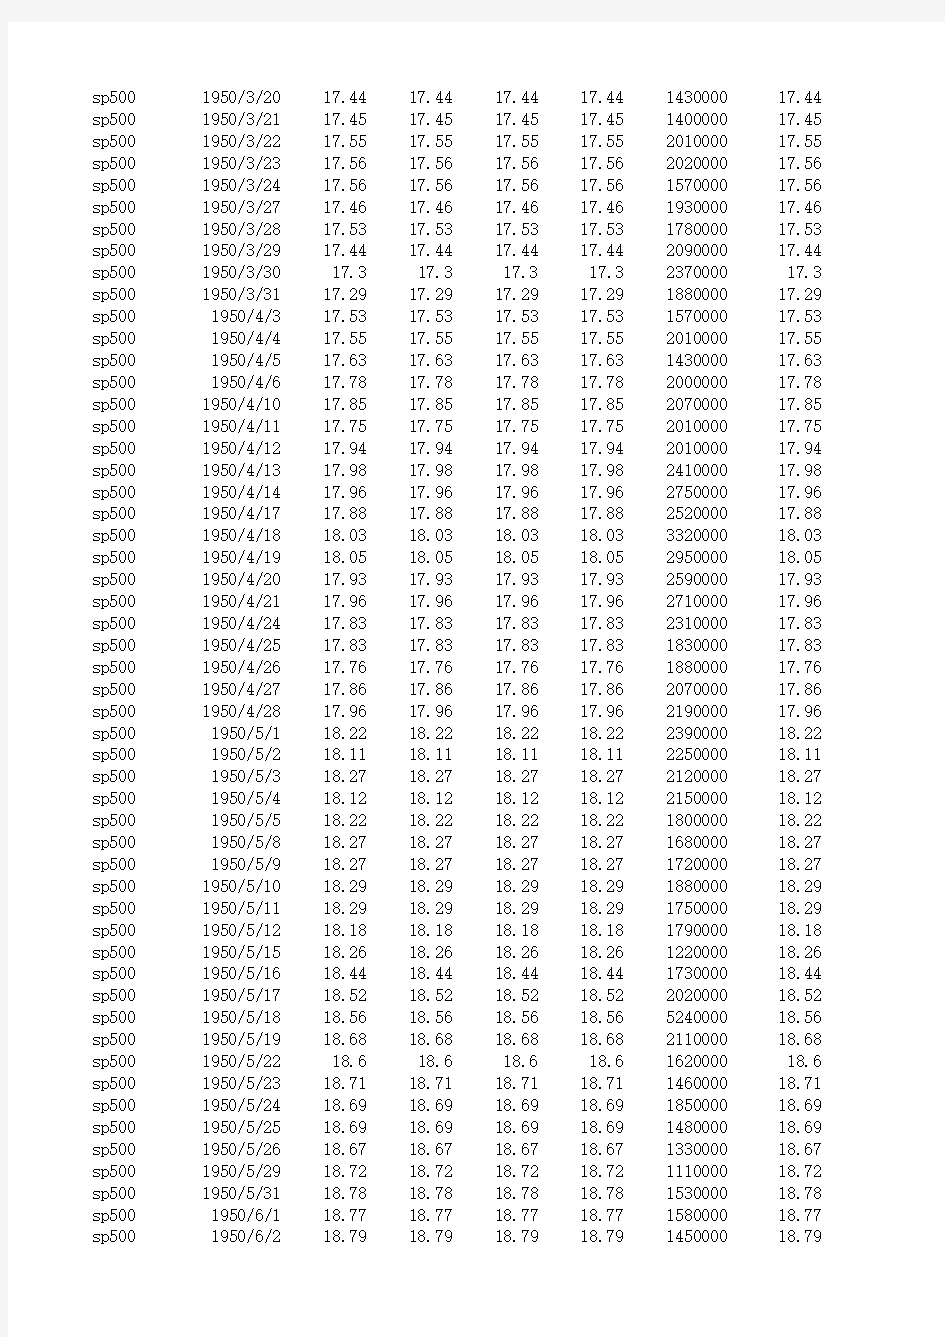 标普500指数历史数据(1950-2015)